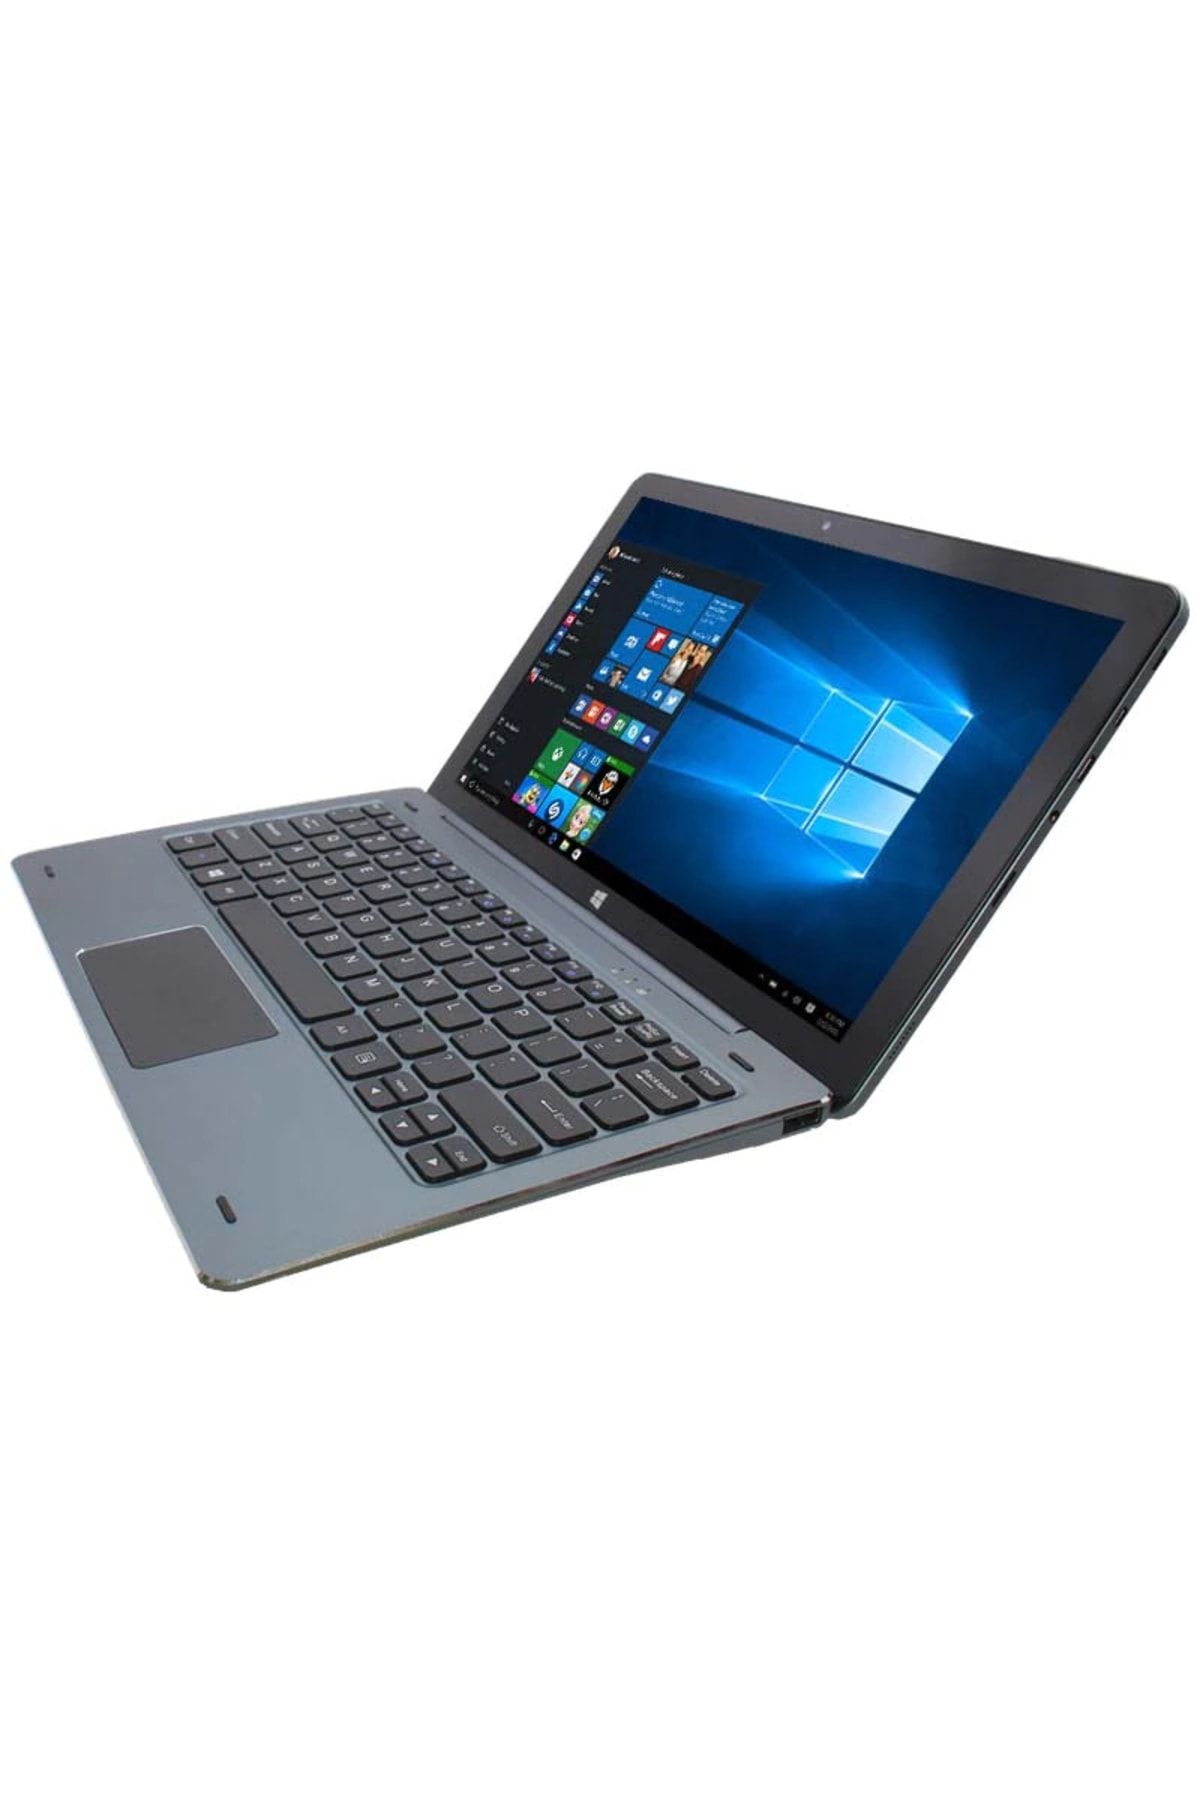 FOSILTECH 2023 Yeni Full Hd Dokunmatik Ekranlı 11.6 Inç Windows Tablet Pc Win10 4gb Ram 128gb Hafızalı Pc